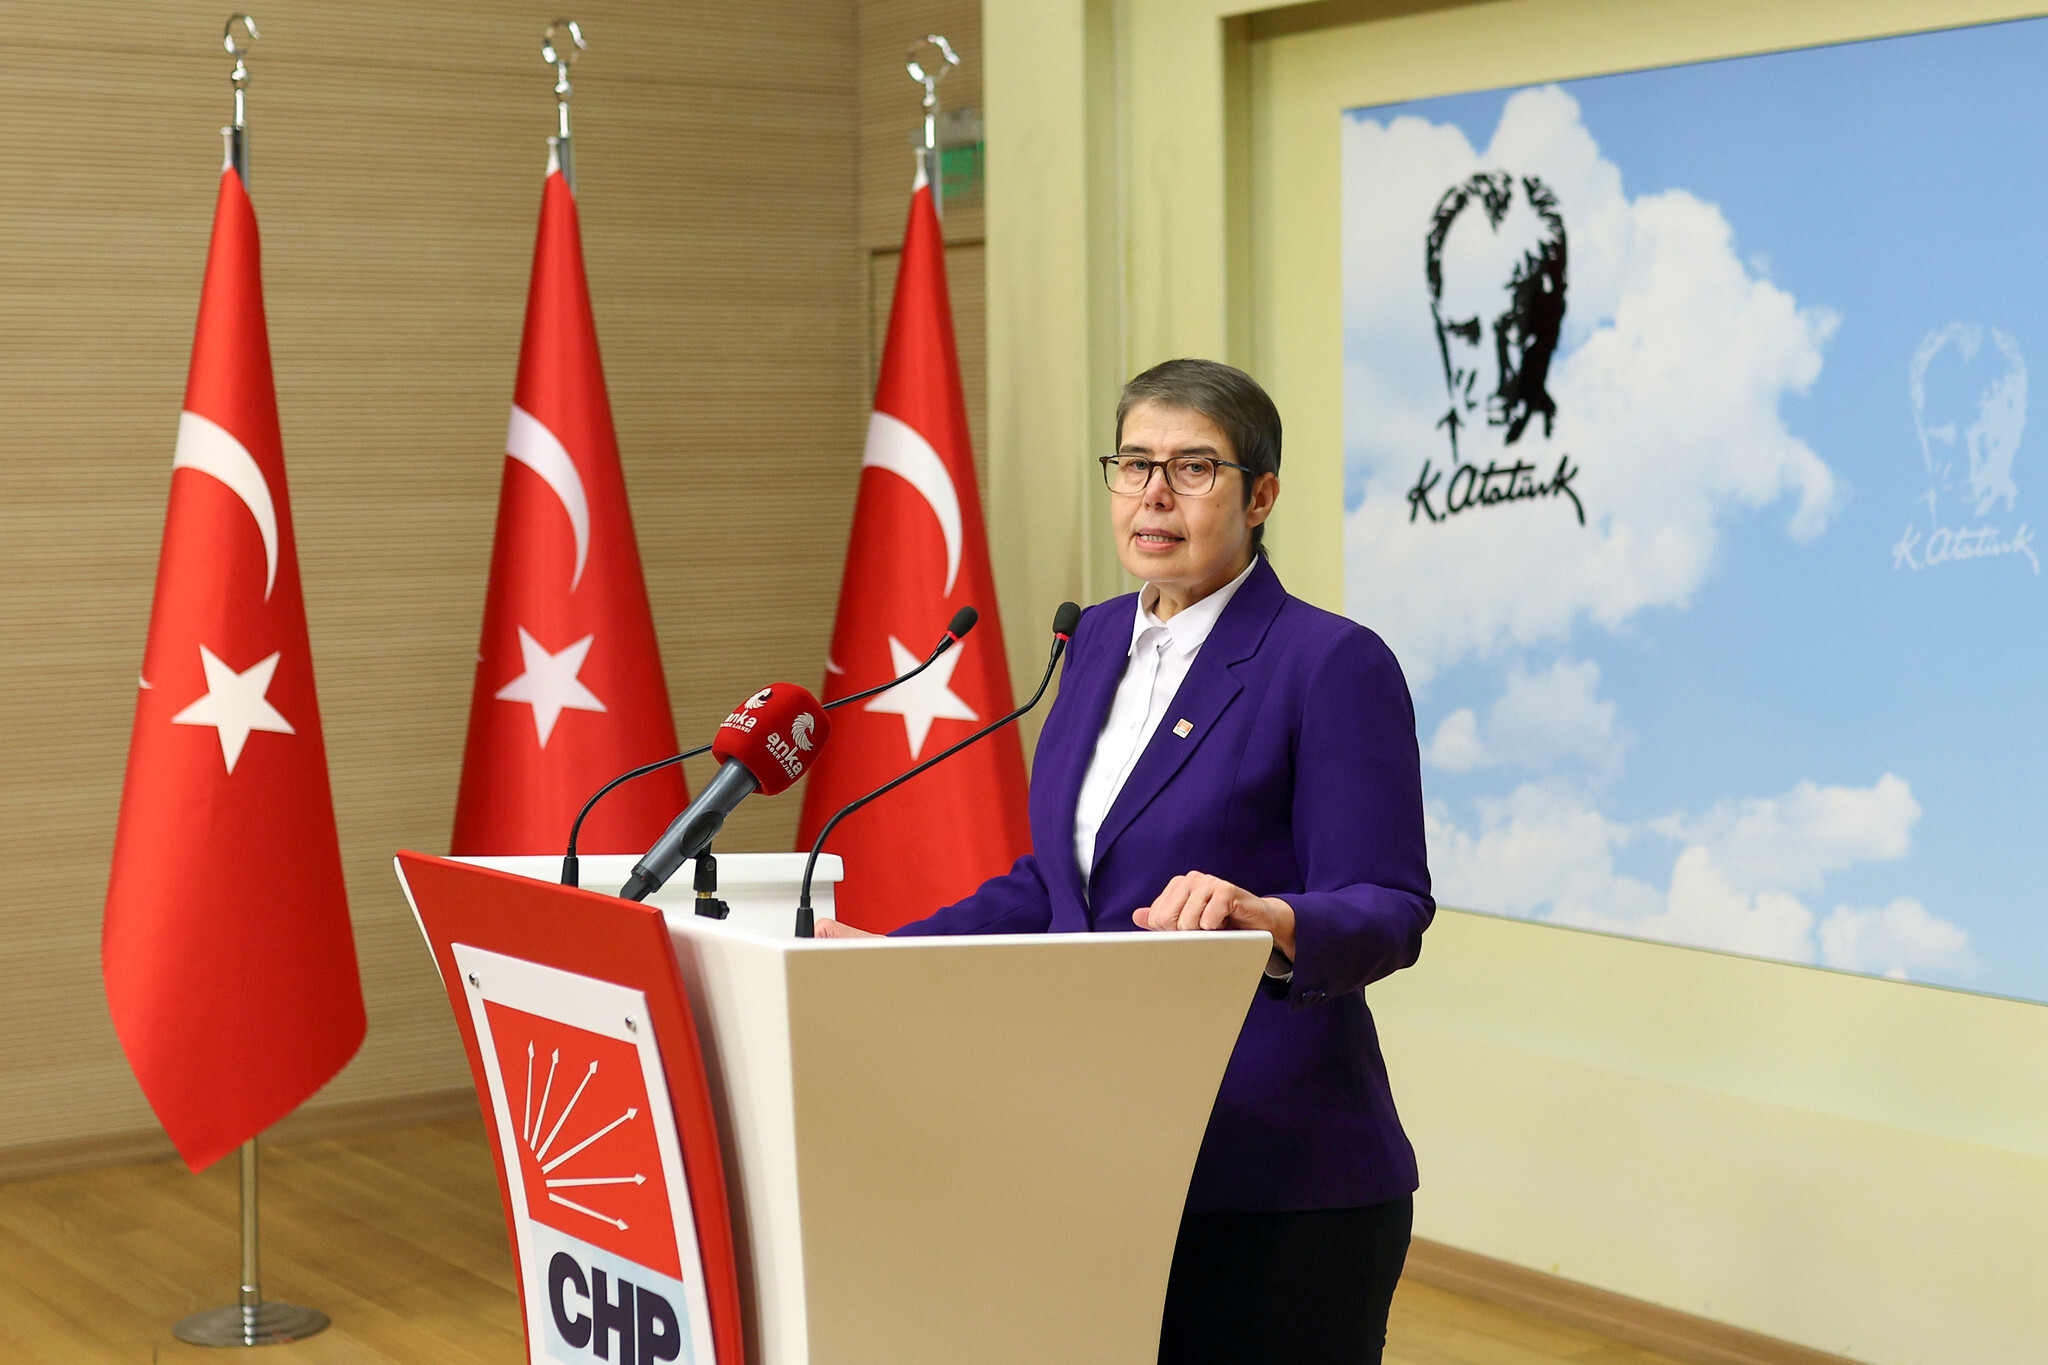 CHP Genel Başkan Yardımcısı Zeliha Aksaz Şahbaz, Sağlık Sektöründeki Sorunları Açıkladı